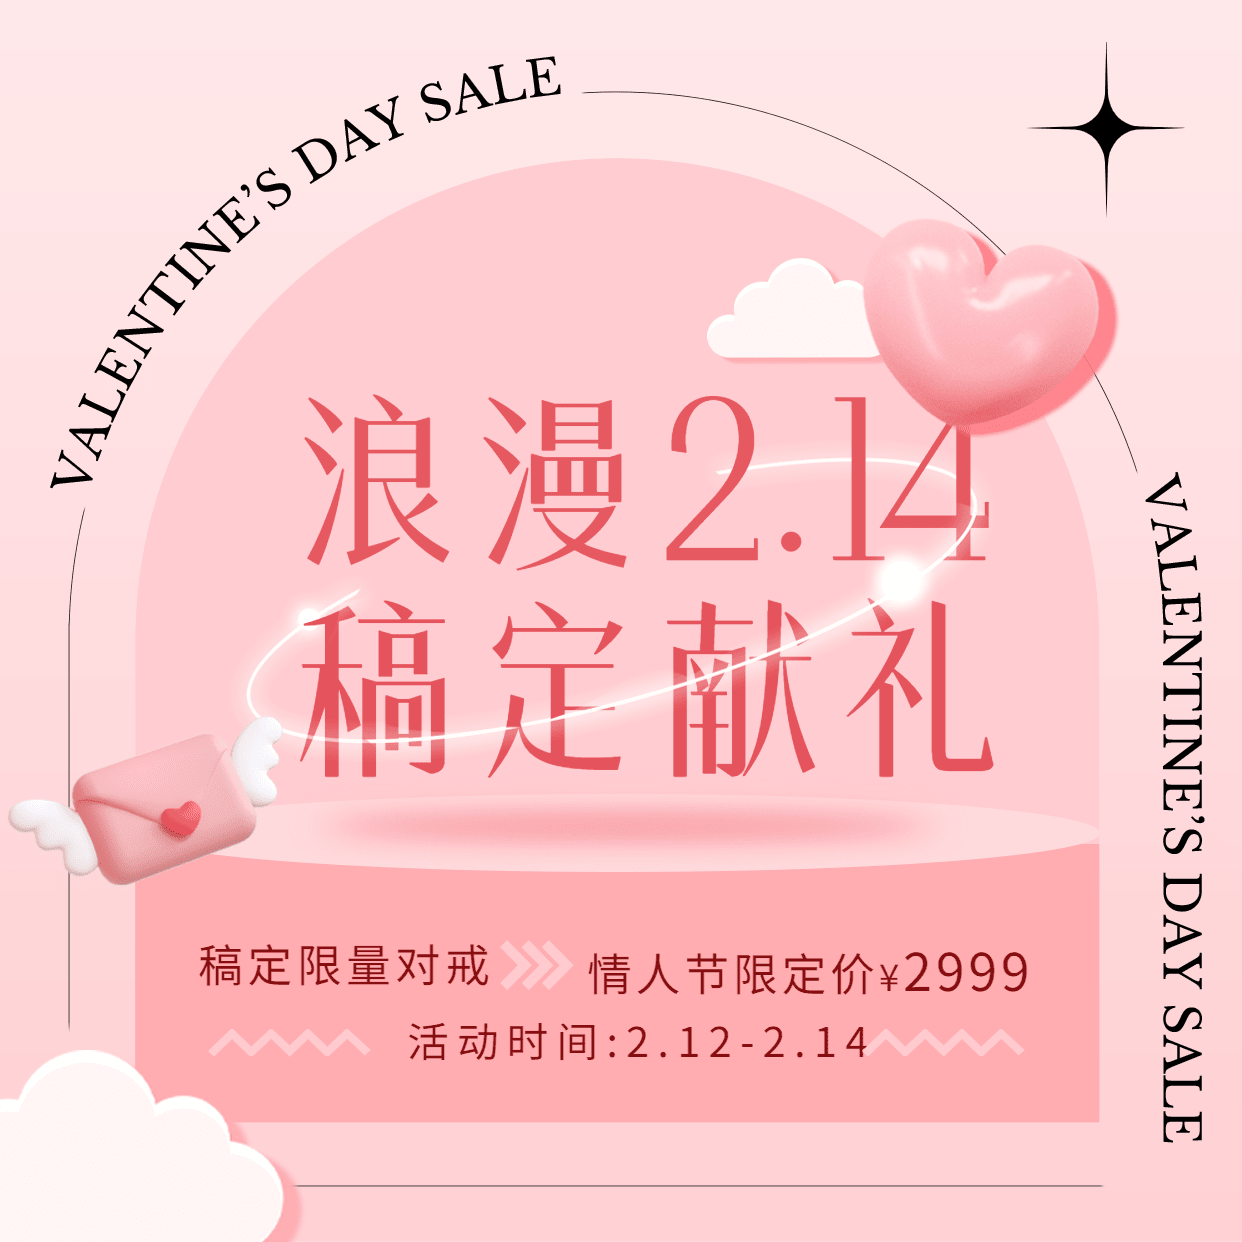 2.14情人节节日营销方形海报